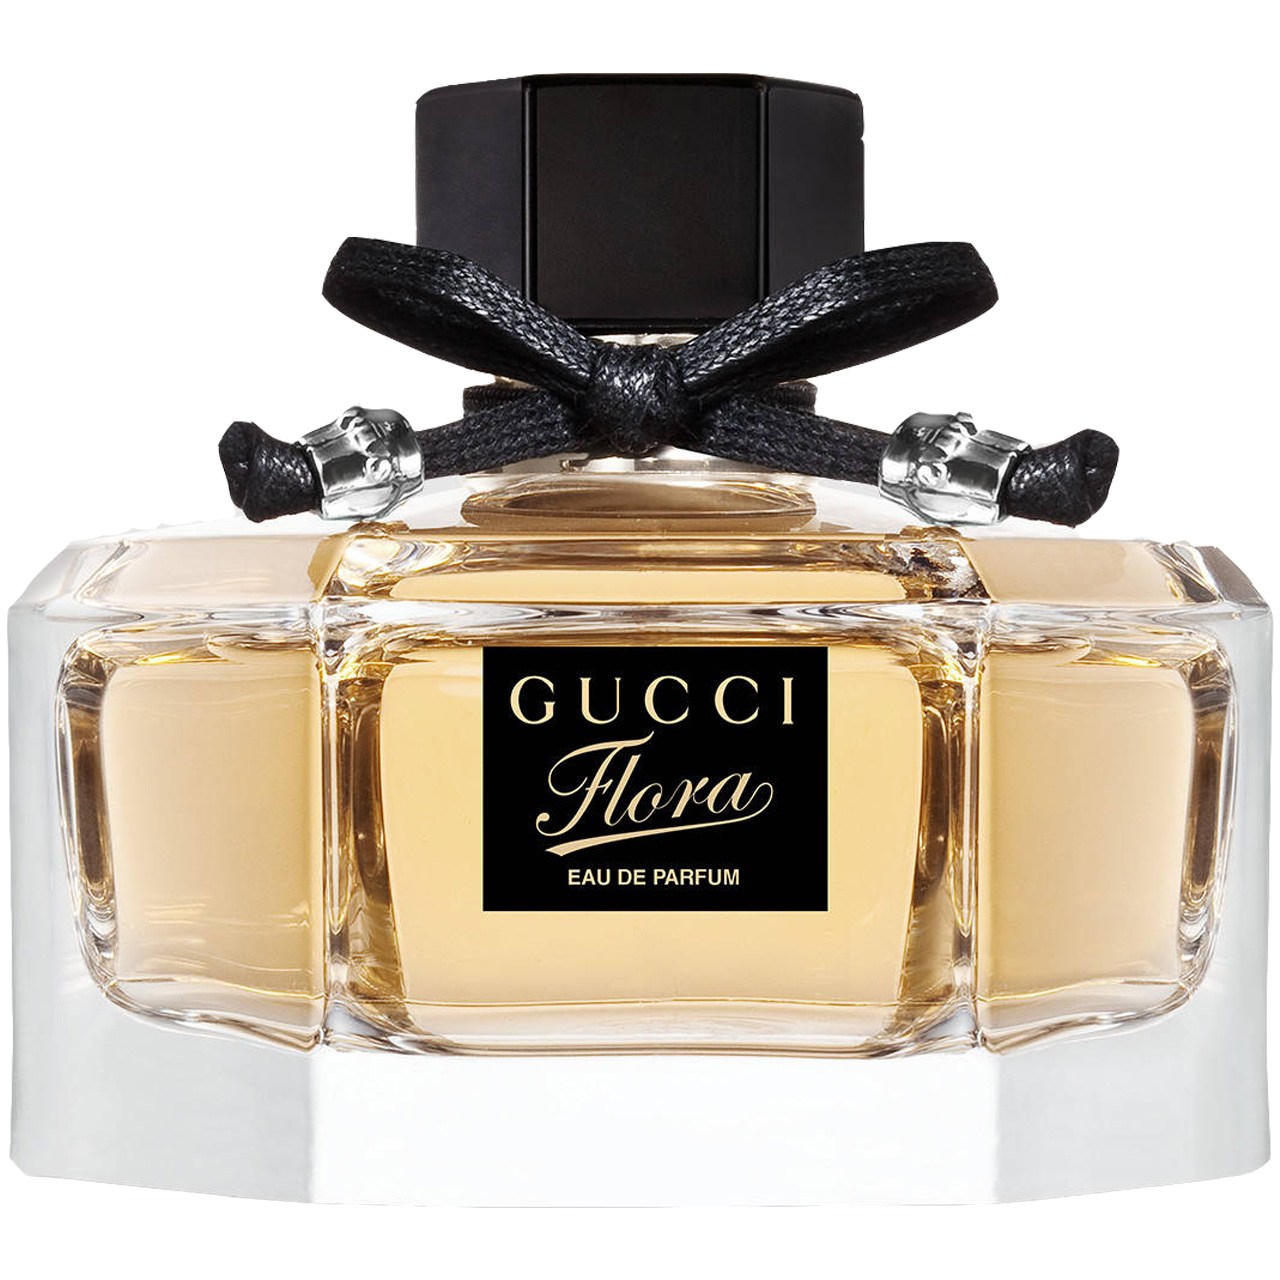 Gucci flora eau de. Flora by Gucci Eau de Parfum. Gucci Flora Parfum. Flora by Gucci Parfum.